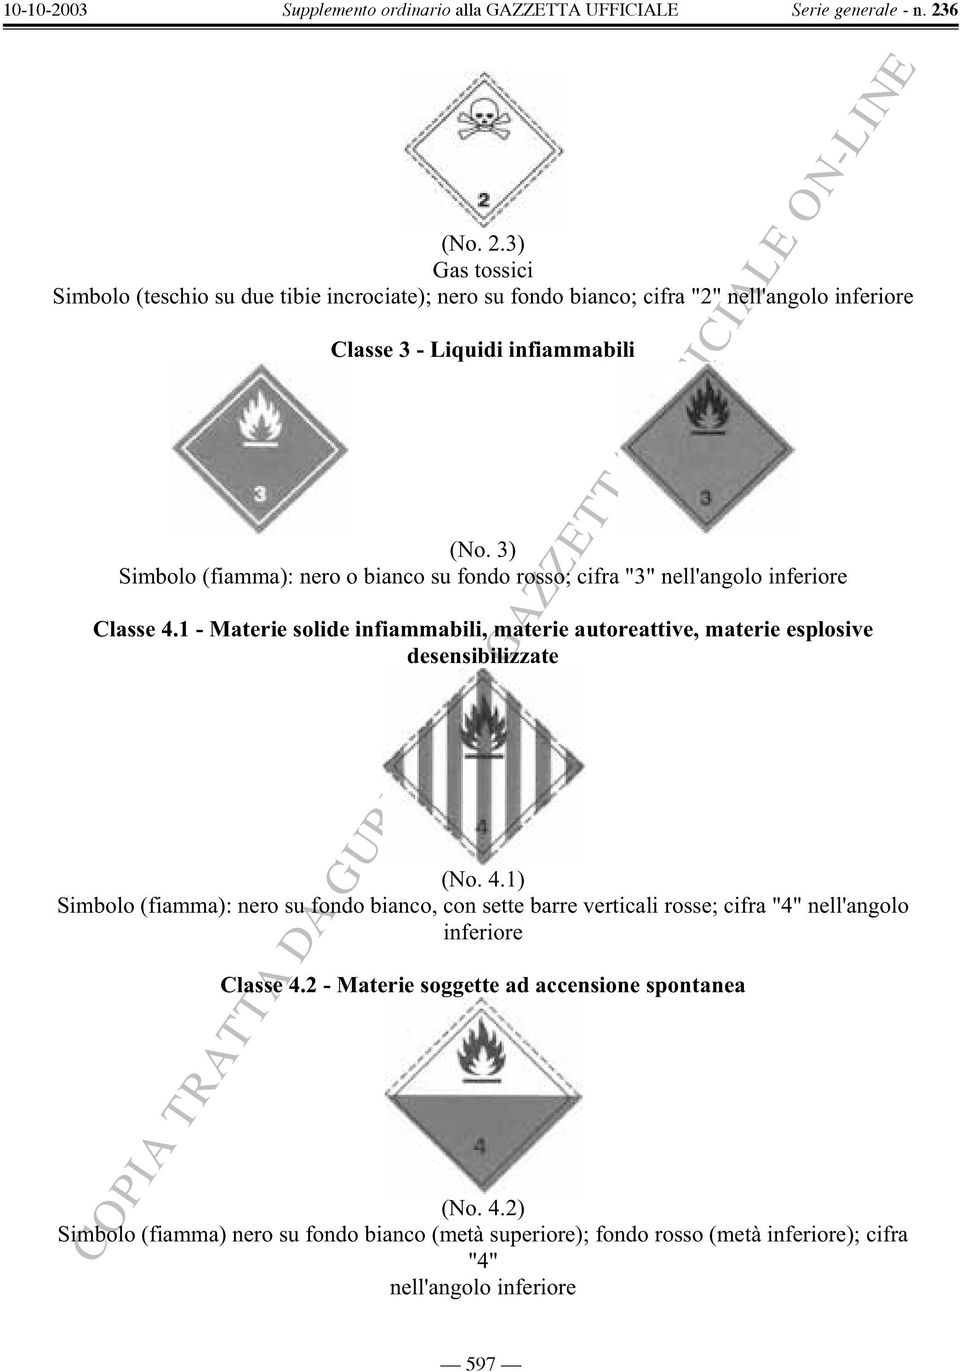 1 - Materie solide infiammabili, materie autoreattive, materie esplosive desensibilizzate (No. 4.